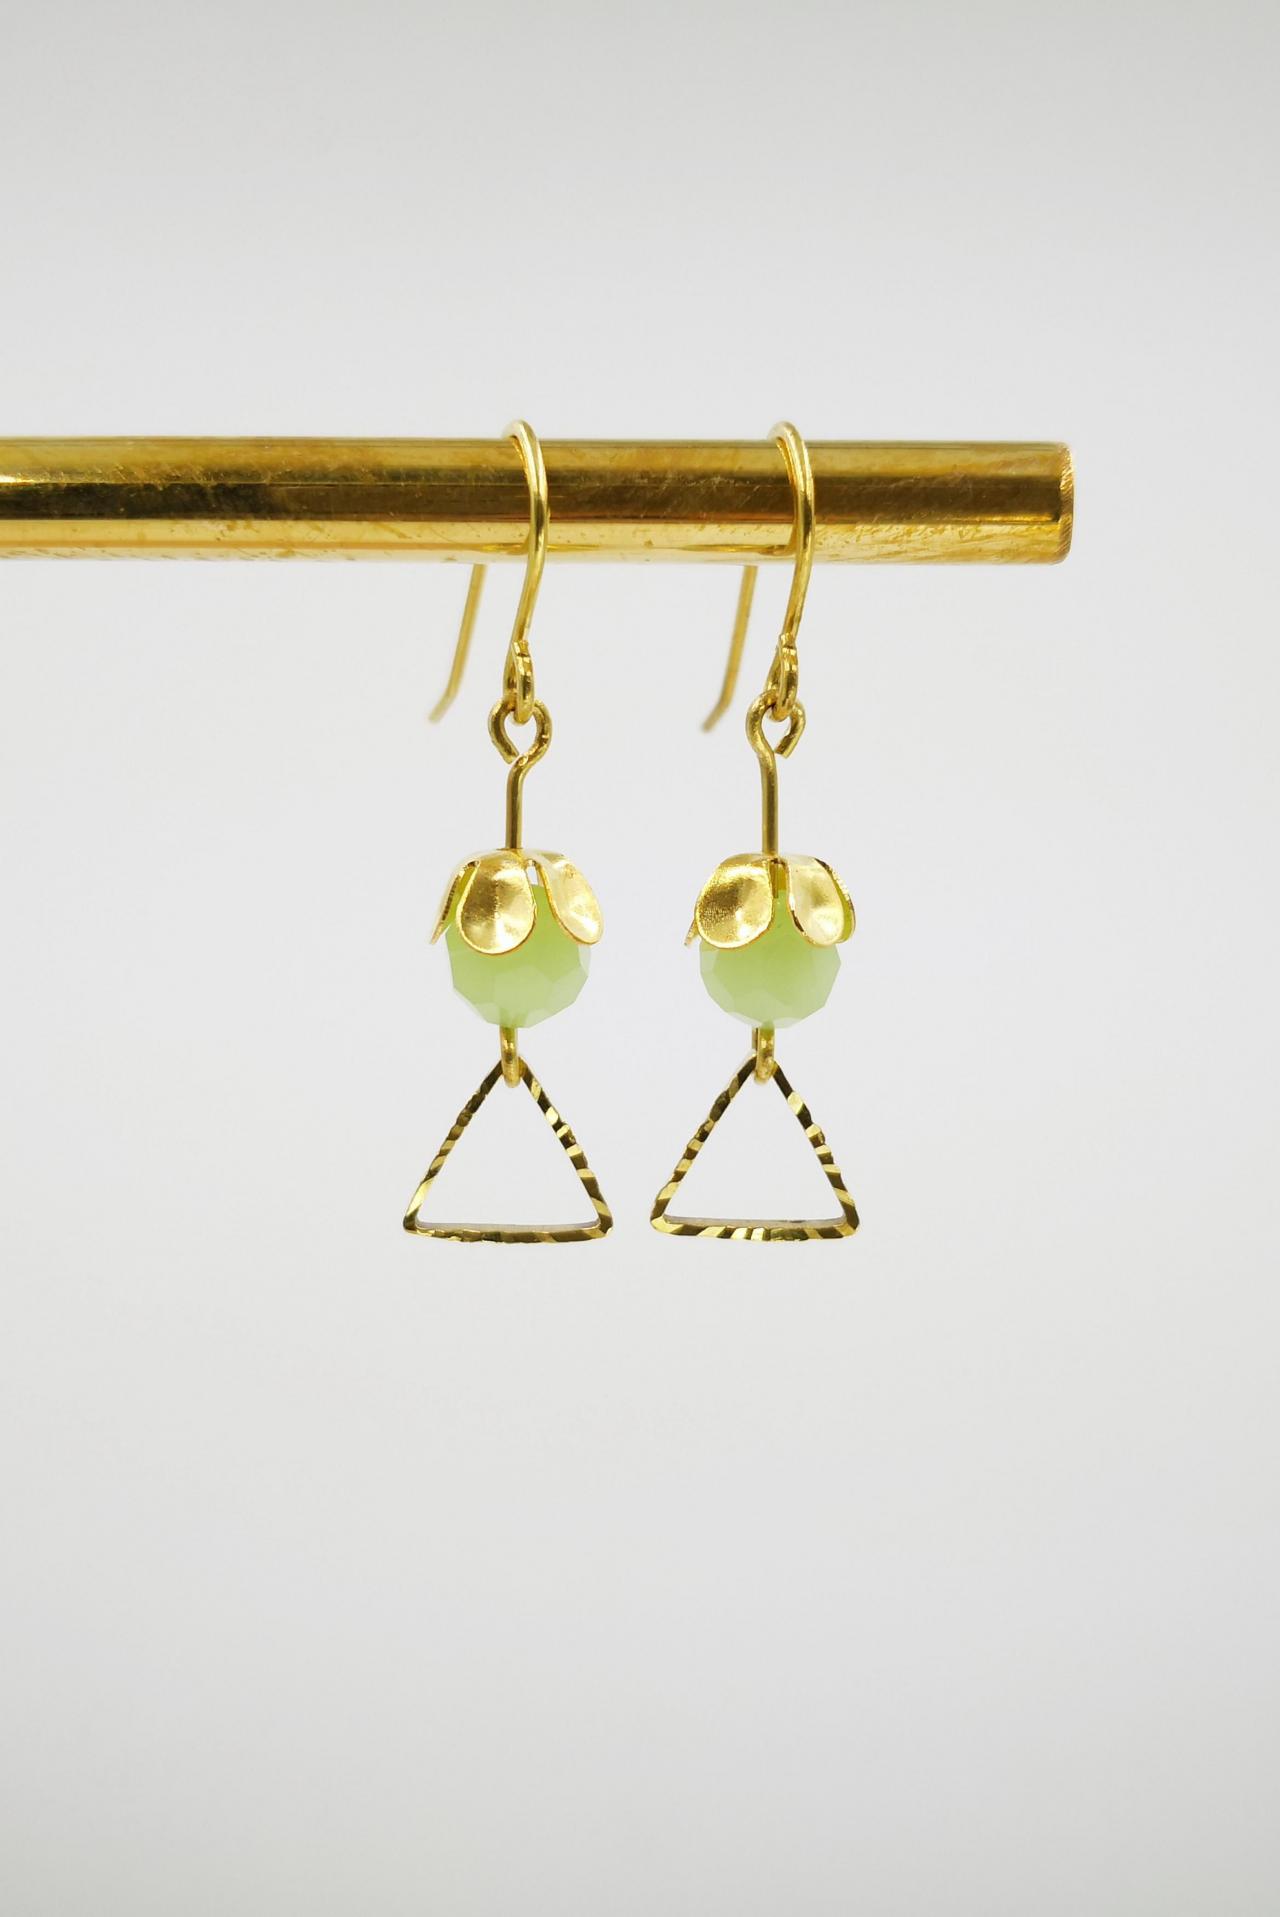 Gold Earrings Dangle Green Earrings Beaded Women Jewelry Geometric Triangle Earrings Personalized Earrings For Women Gift Simple Earrings